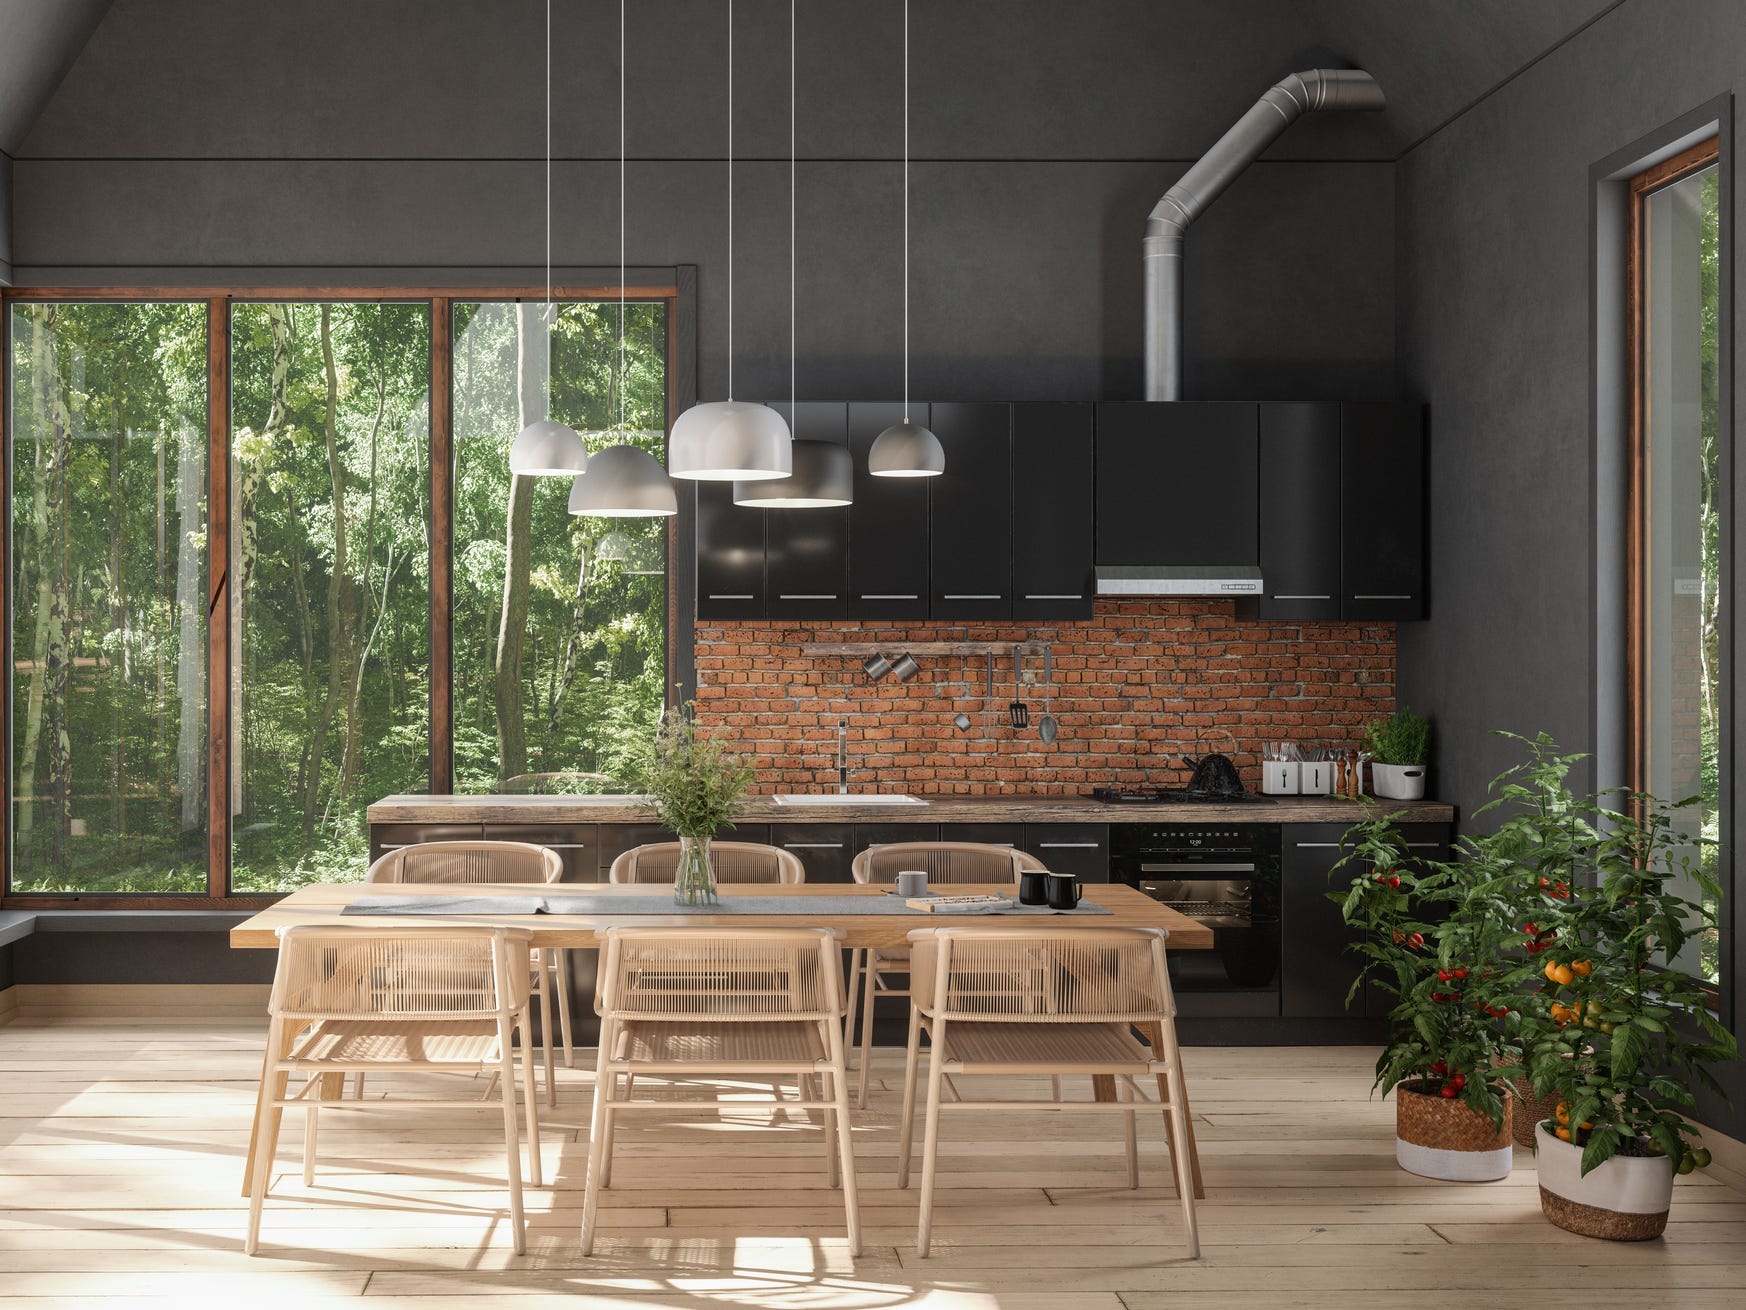 Moderne Küche mit großen Fenstern und industriellen Akzenten wie unverputzten Ziegeln und Rohren